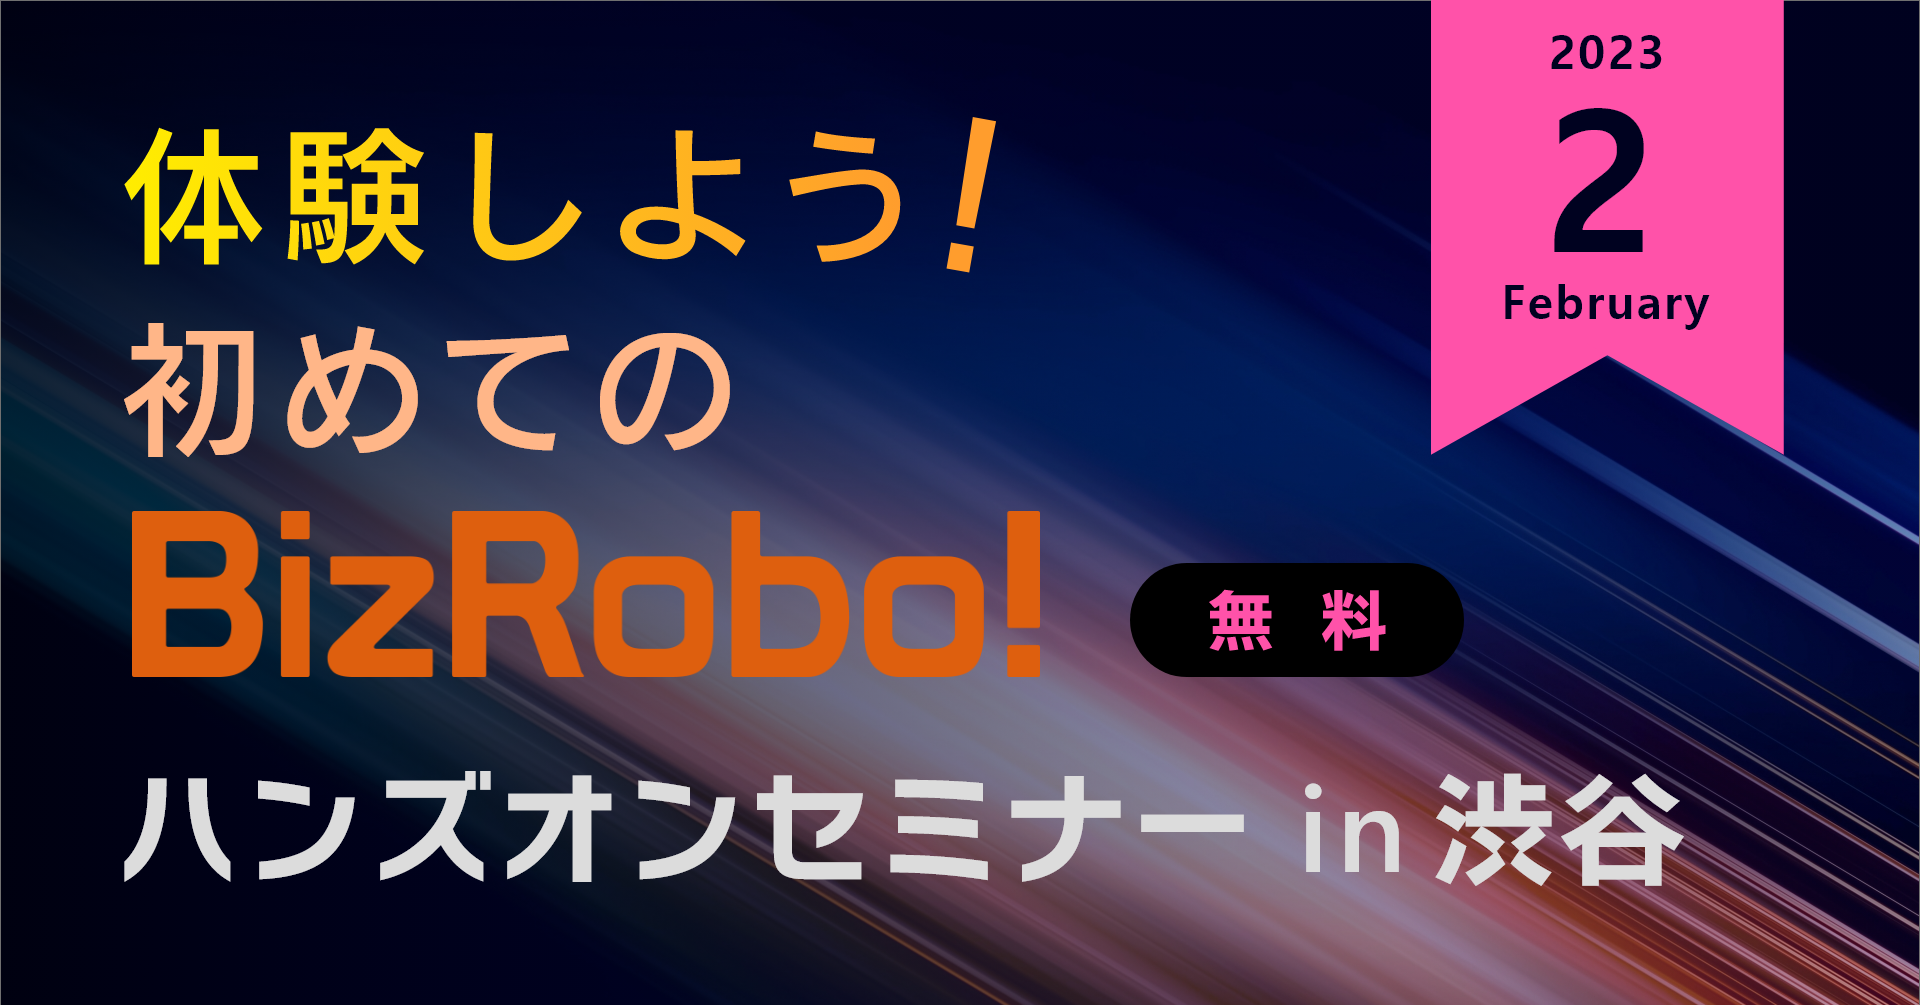 体験しよう！初めてのBizRobo! ハンズオンセミナー in 渋谷【2023年2月】